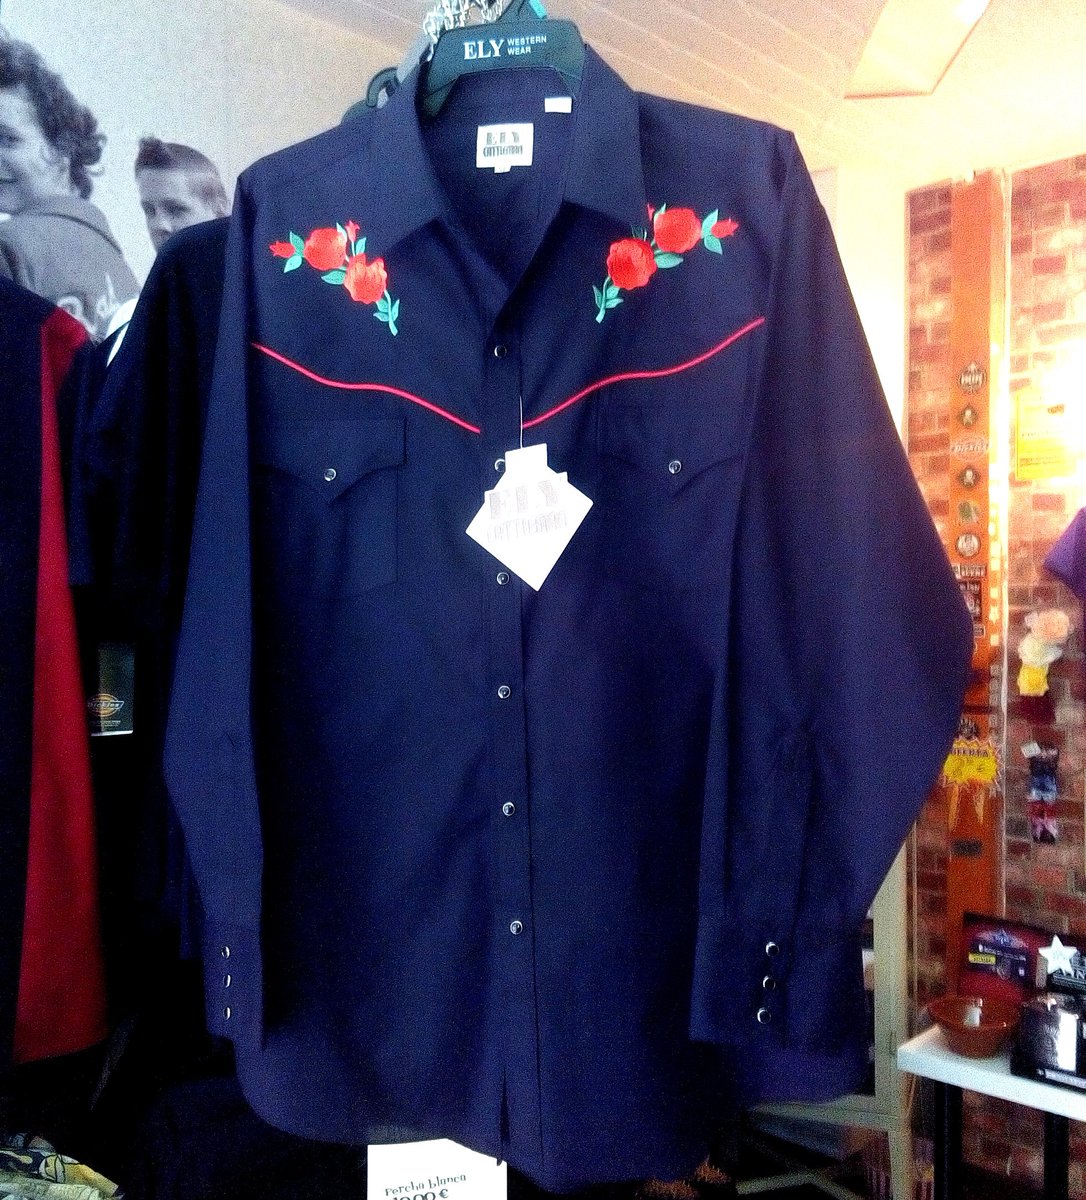 Rocket on Twitter: Nos están llegando nuevas camisas western, y particularmente nos encanta: Red Rose, de la marca Ely &amp; Walker Cattleman +info: https://t.co/uXZBQGdyho #Western #Country #Cowboy #Rockabilly #Madrid #